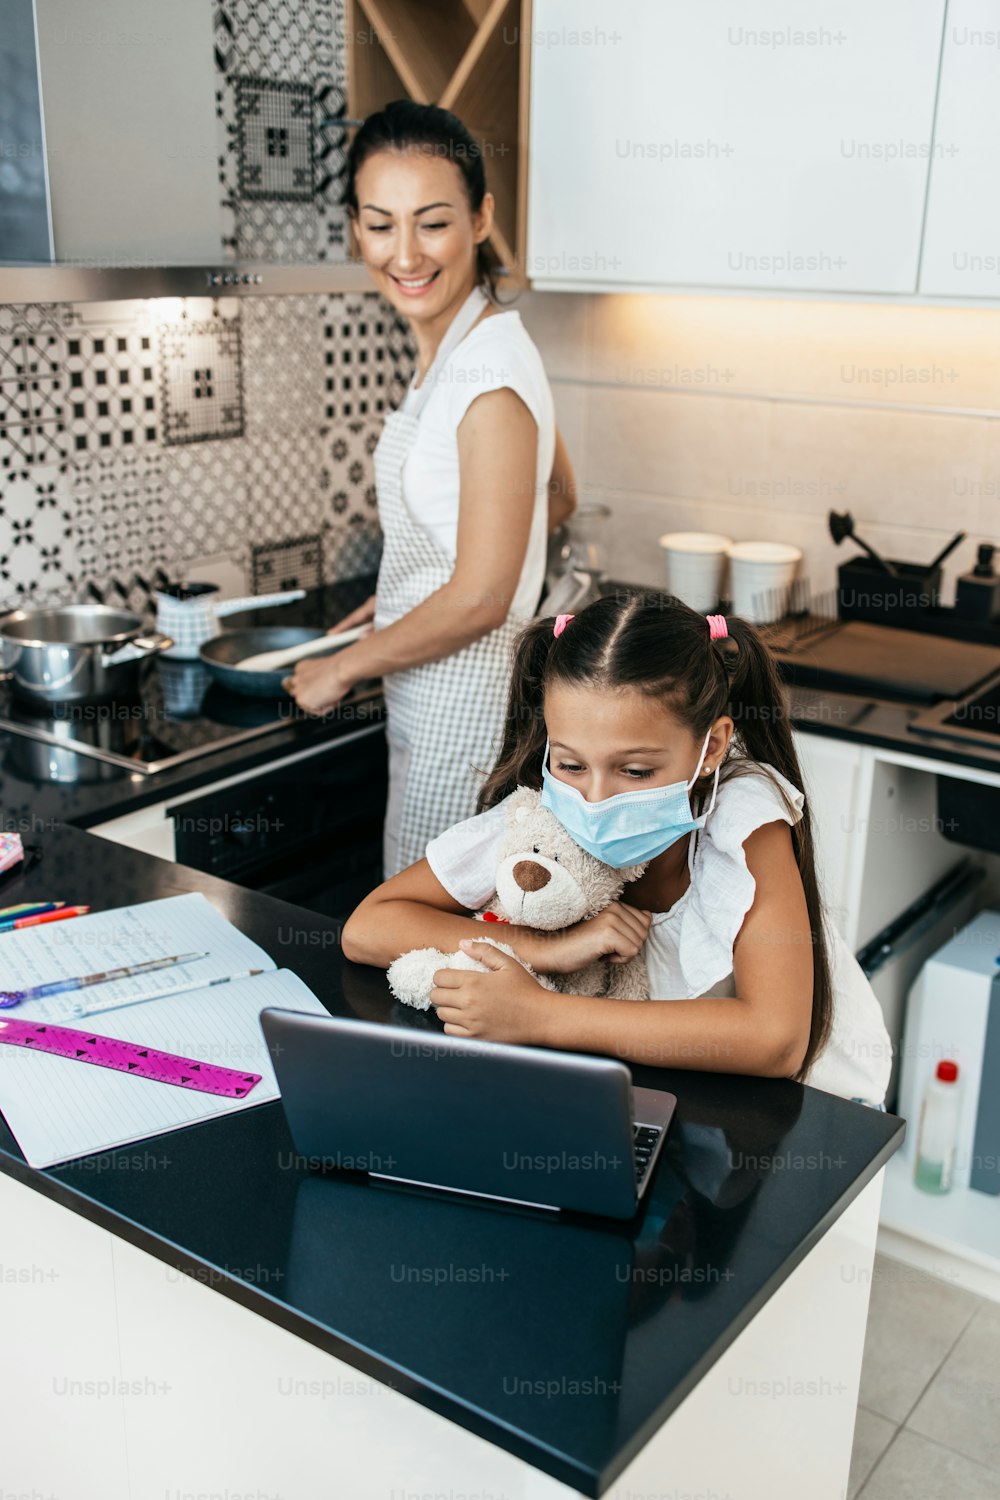 Kleines Mädchen mit E-Learning-Sitzung während der Covid-19-Pandemie-Krise Lockdown oder Quarantäne. Vielbeschäftigte Mutter, die in der Küche arbeitet und im Hintergrund das Mittagessen zubereitet. Krankheitsprävention und neues Normalkonzept.